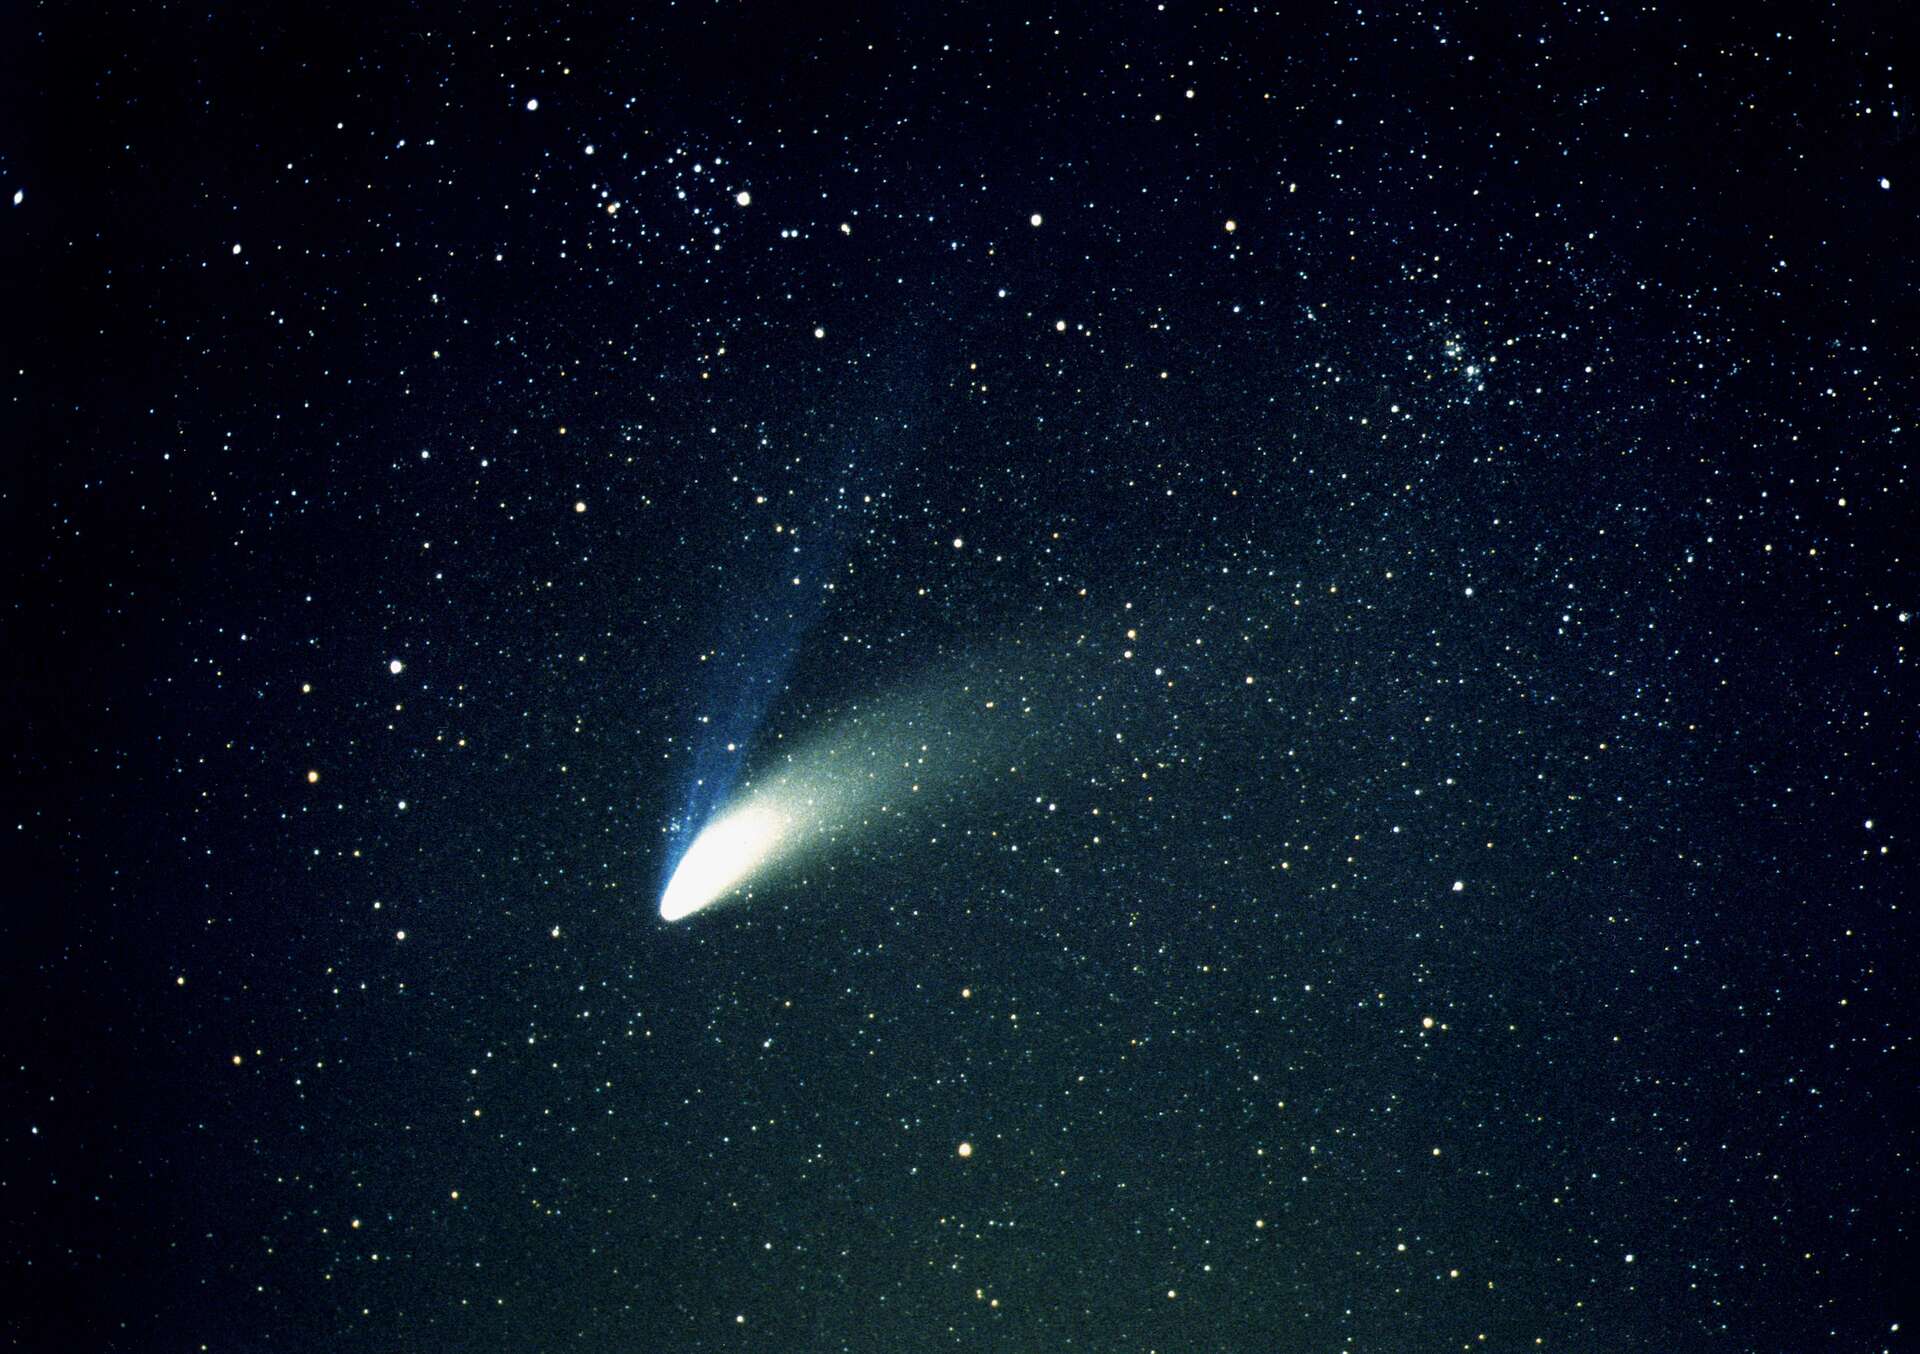 Nuevo cometa visible a simple vista desde septiembre